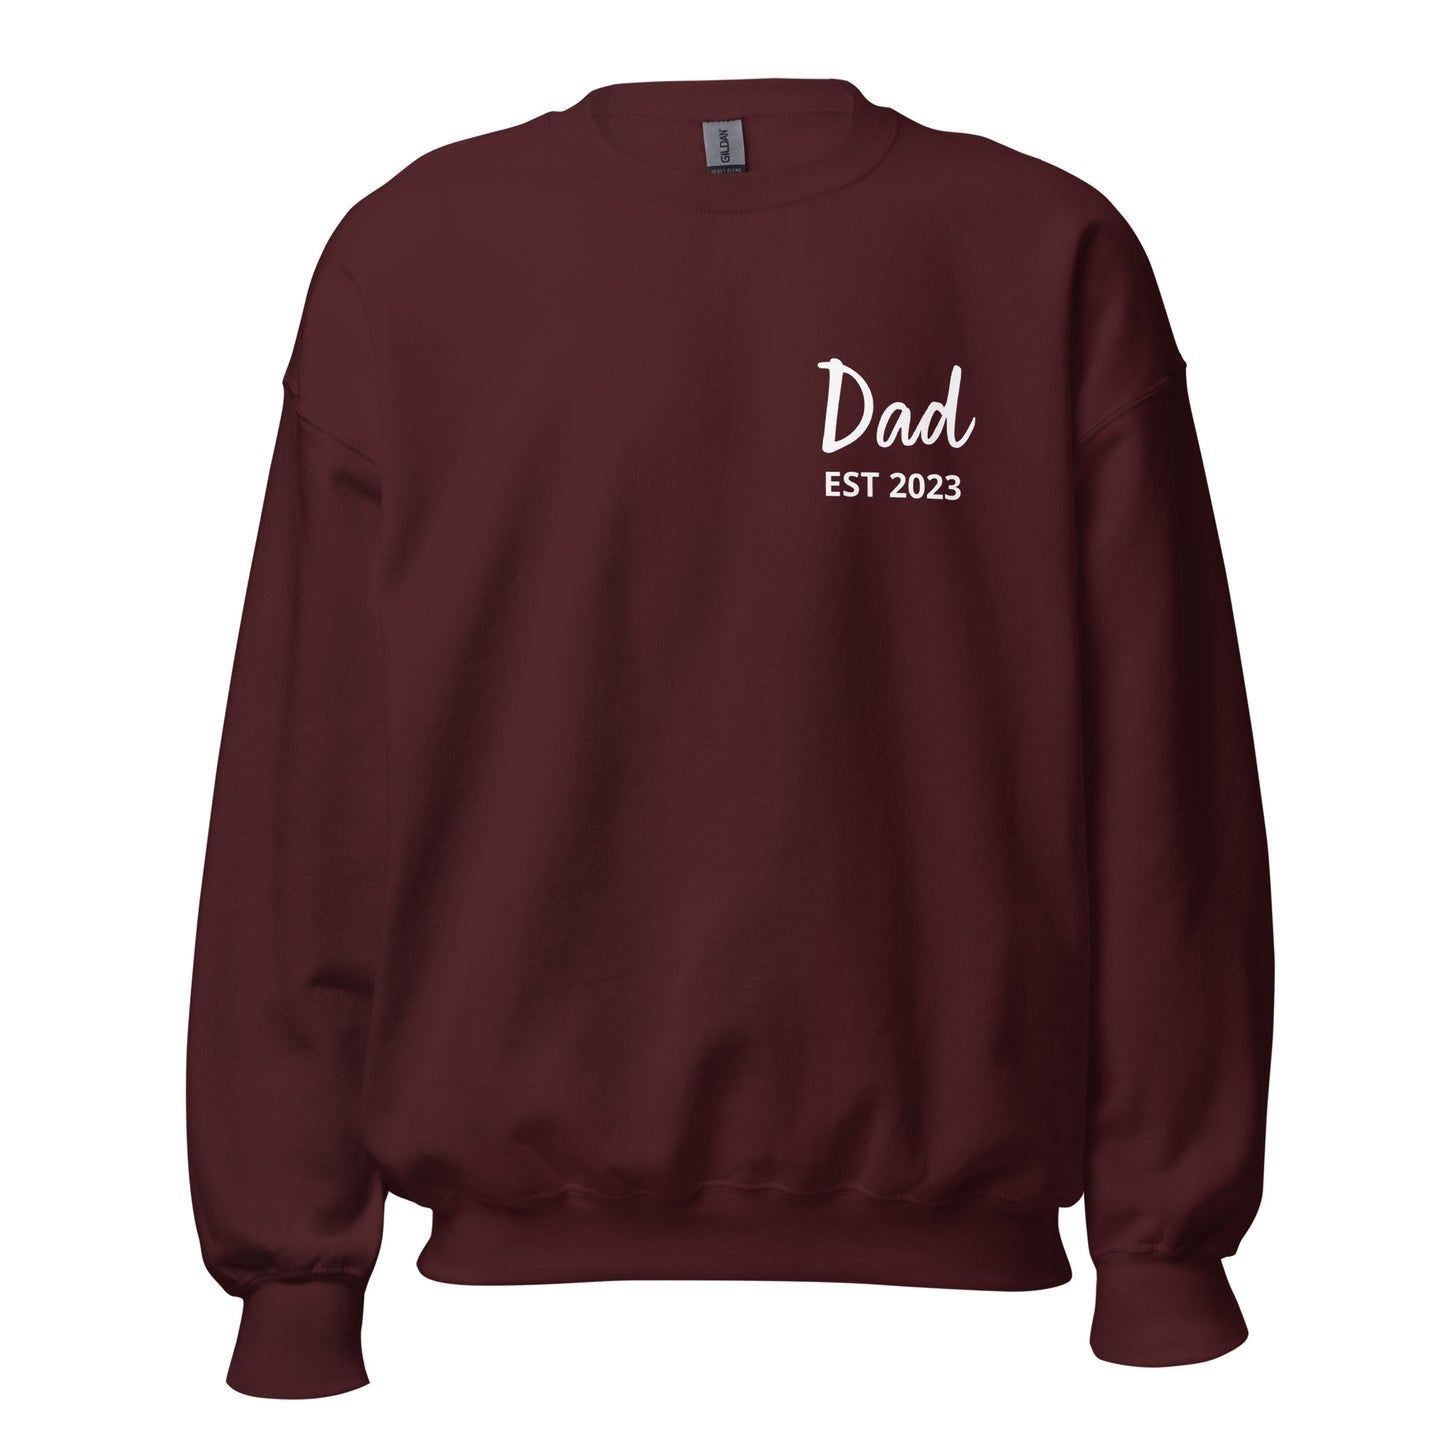 Dad Printed Sweatshirt